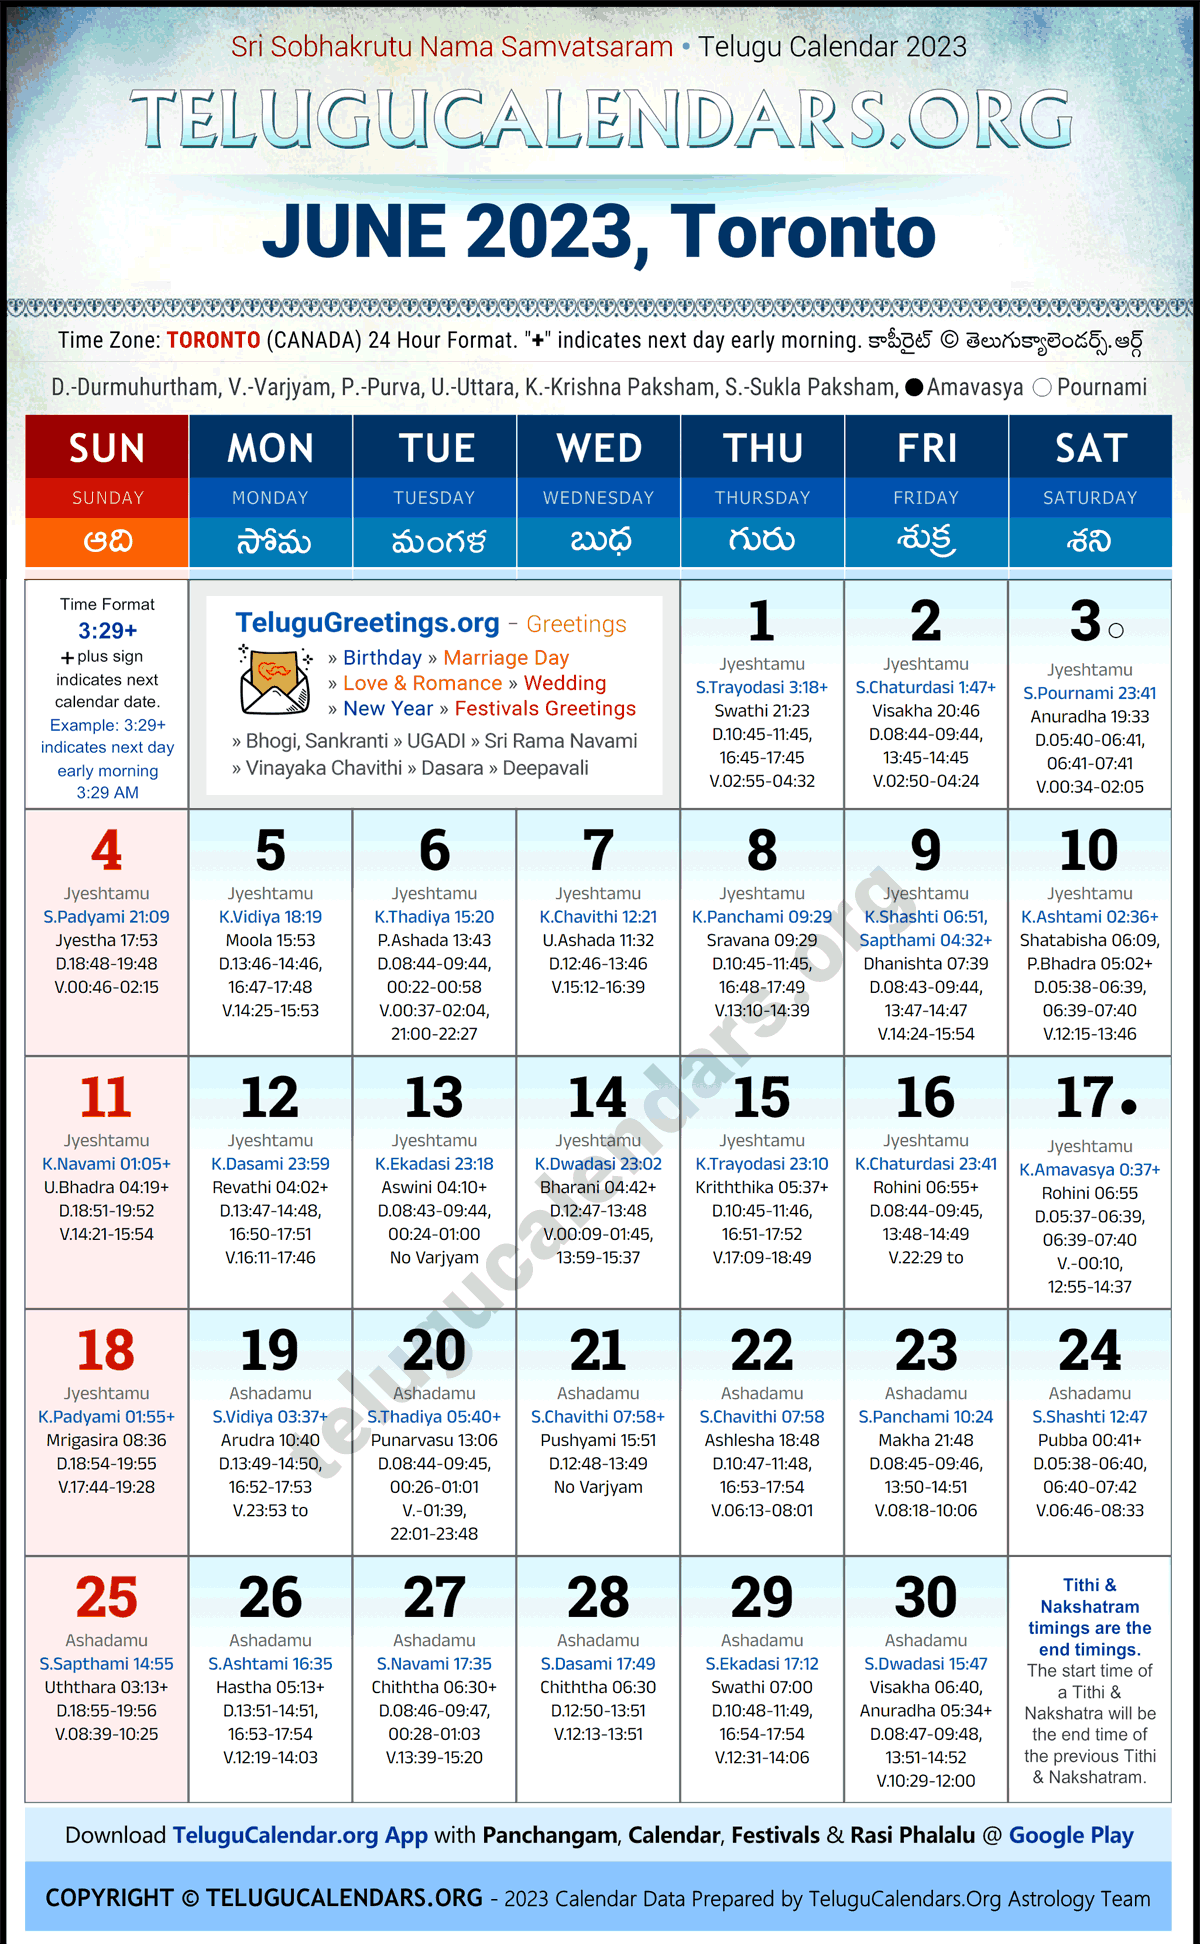 Telugu Calendar 2023 June Festivals for Toronto